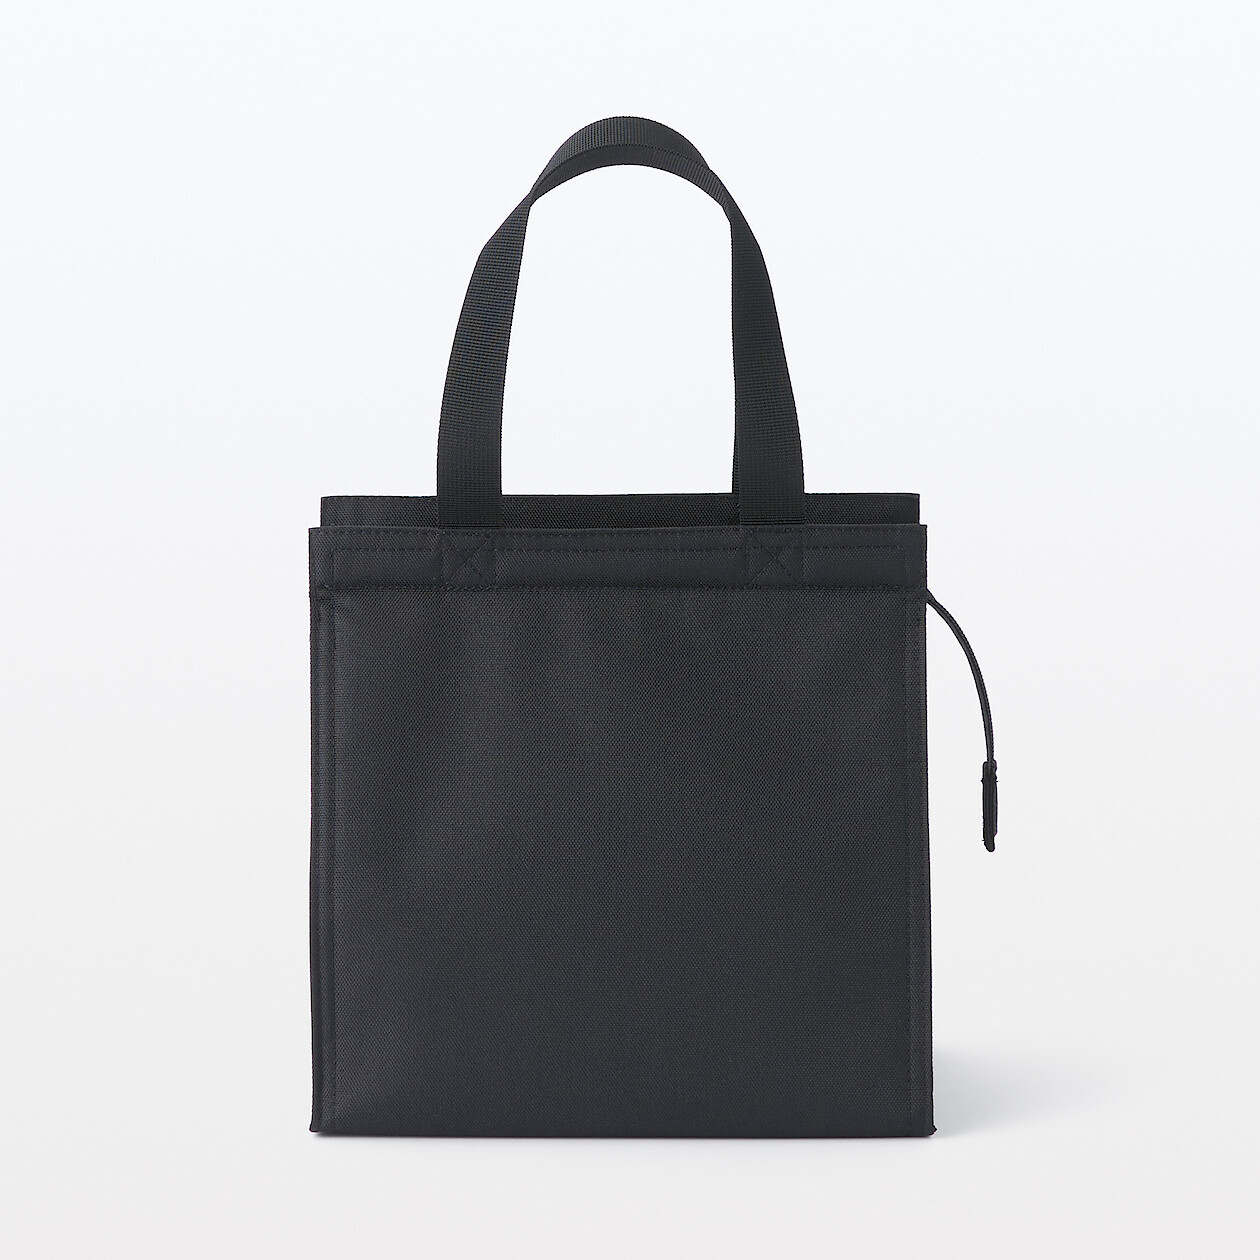 Aluminium Padded Shopping Bag 7L BlackW23.5xH23.5xD15.5cm